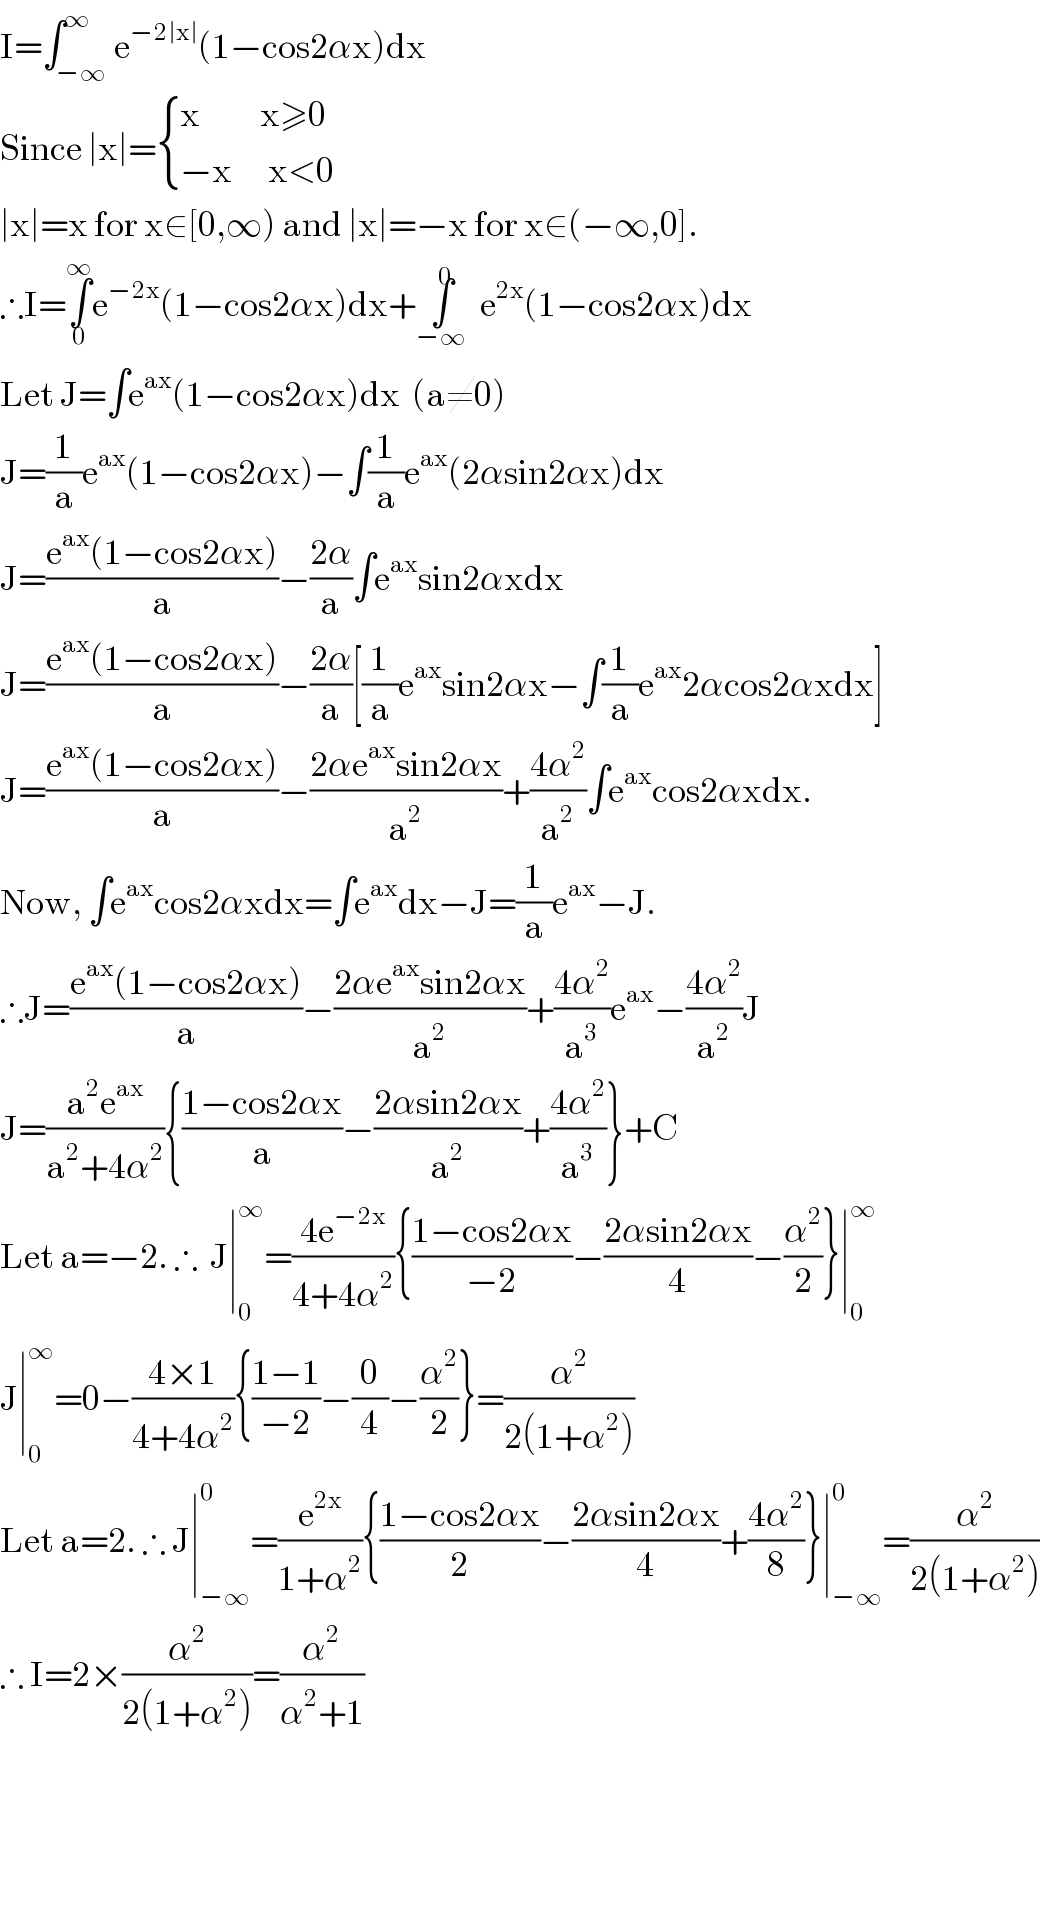 I=∫_(−∞) ^∞ e^(−2∣x∣) (1−cos2αx)dx  Since ∣x∣= { ((x          x≥0)),((−x      x<0)) :}  ∣x∣=x for x∈[0,∞) and ∣x∣=−x for x∈(−∞,0].  ∴I=∫_0 ^∞ e^(−2x) (1−cos2αx)dx+∫^0 _(−∞) e^(2x) (1−cos2αx)dx  Let J=∫e^(ax) (1−cos2αx)dx  (a≠0)  J=(1/a)e^(ax) (1−cos2αx)−∫(1/a)e^(ax) (2αsin2αx)dx  J=((e^(ax) (1−cos2αx))/a)−((2α)/a)∫e^(ax) sin2αxdx  J=((e^(ax) (1−cos2αx))/a)−((2α)/a)[(1/a)e^(ax) sin2αx−∫(1/a)e^(ax) 2αcos2αxdx]  J=((e^(ax) (1−cos2αx))/a)−((2αe^(ax) sin2αx)/a^2 )+((4α^2 )/a^2 )∫e^(ax) cos2αxdx.  Now, ∫e^(ax) cos2αxdx=∫e^(ax) dx−J=(1/a)e^(ax) −J.  ∴J=((e^(ax) (1−cos2αx))/a)−((2αe^(ax) sin2αx)/a^2 )+((4α^2 )/a^3 )e^(ax) −((4α^2 )/a^2 )J  J=((a^2 e^(ax) )/(a^2 +4α^2 )){((1−cos2αx)/a)−((2αsin2αx)/a^2 )+((4α^2 )/a^3 )}+C  Let a=−2. ∴  J∣_0 ^∞ =((4e^(−2x) )/(4+4α^2 )){((1−cos2αx)/(−2))−((2αsin2αx)/4)−(α^2 /2)}∣_0 ^∞   J∣_0 ^∞ =0−((4×1)/(4+4α^2 )){((1−1)/(−2))−(0/4)−(α^2 /2)}=(α^2 /(2(1+α^2 )))  Let a=2. ∴ J∣_(−∞) ^0 =(e^(2x) /(1+α^2 )){((1−cos2αx)/2)−((2αsin2αx)/4)+((4α^2 )/8)}∣_(−∞) ^0 =(α^2 /(2(1+α^2 )))  ∴ I=2×(α^2 /(2(1+α^2 )))=(α^2 /(α^2 +1))        